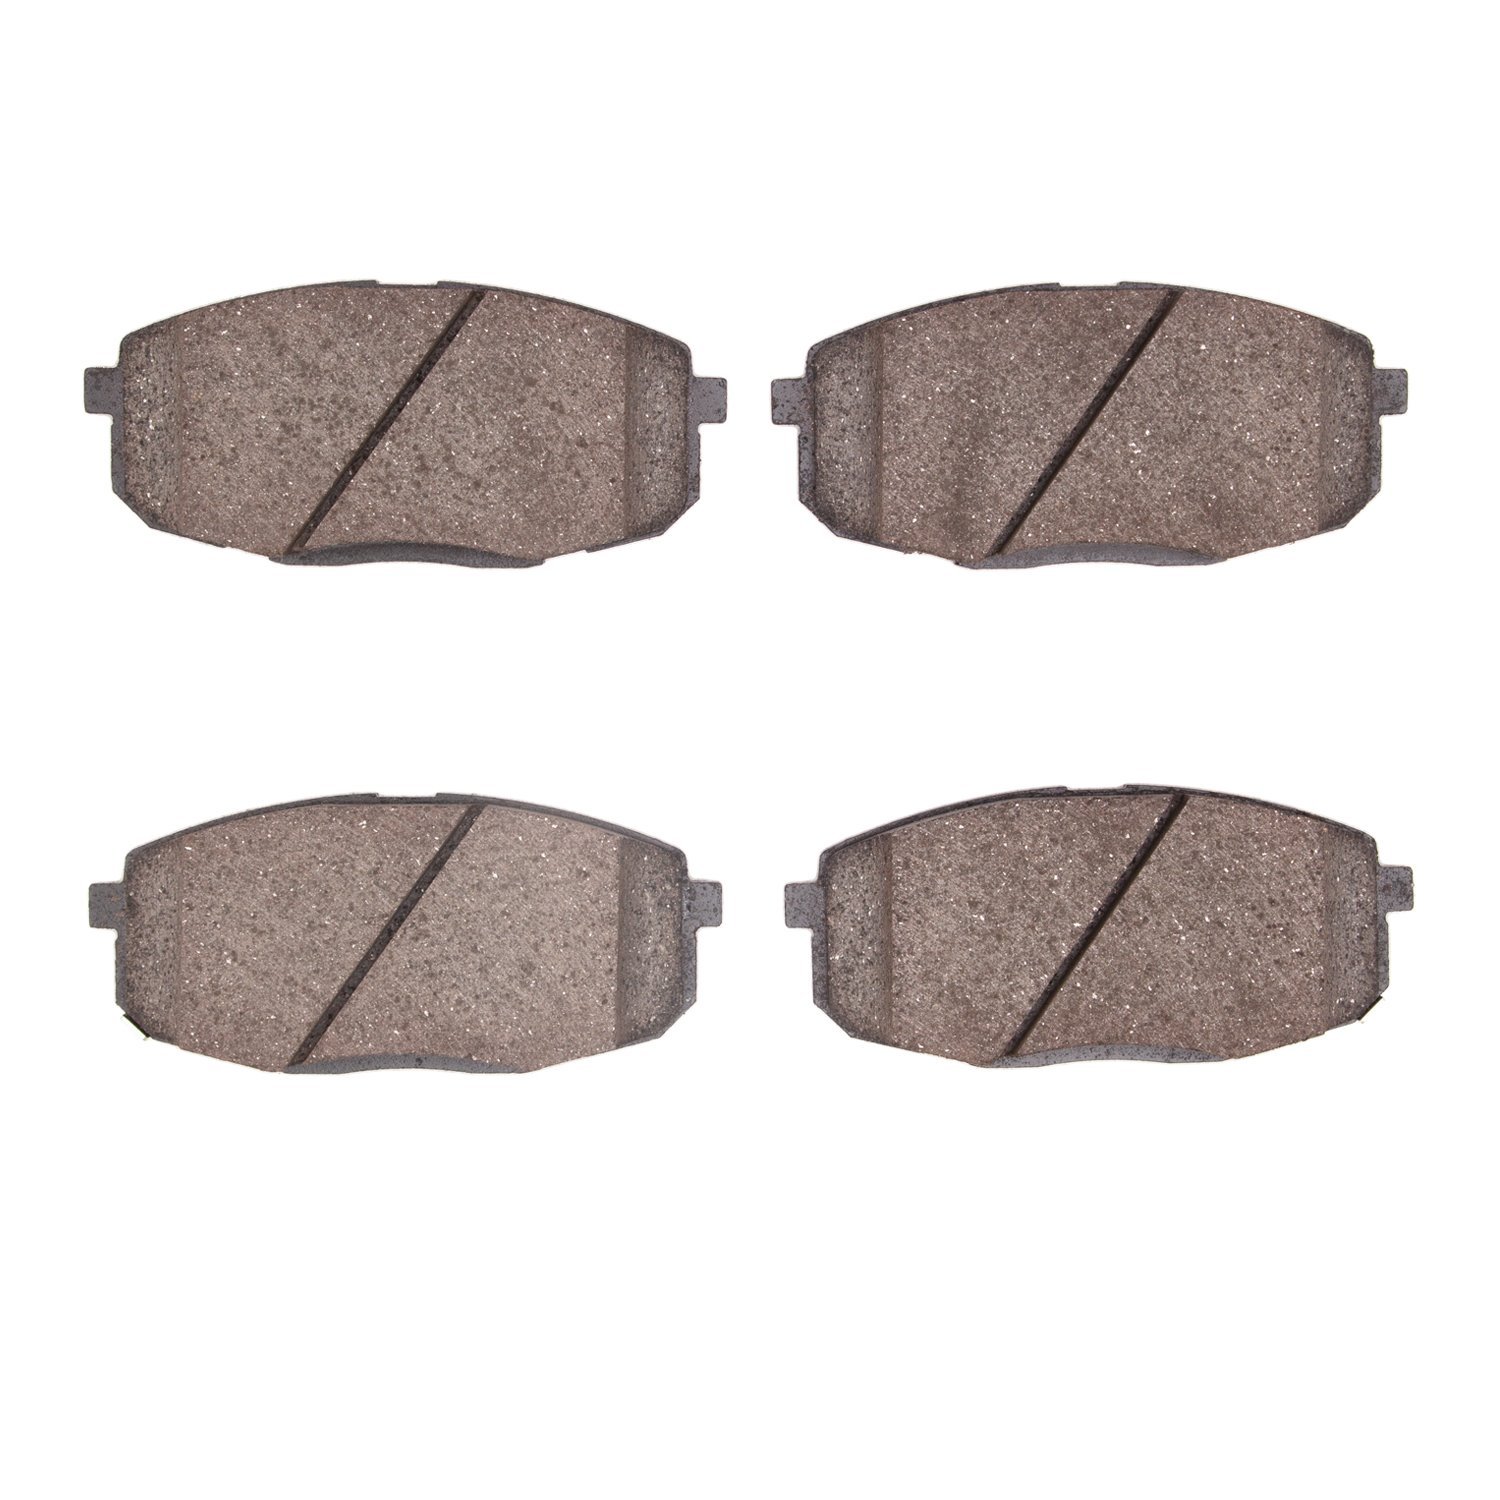 1310-2035-00 3000-Series Ceramic Brake Pads, Fits Select Kia/Hyundai/Genesis, Position: Front